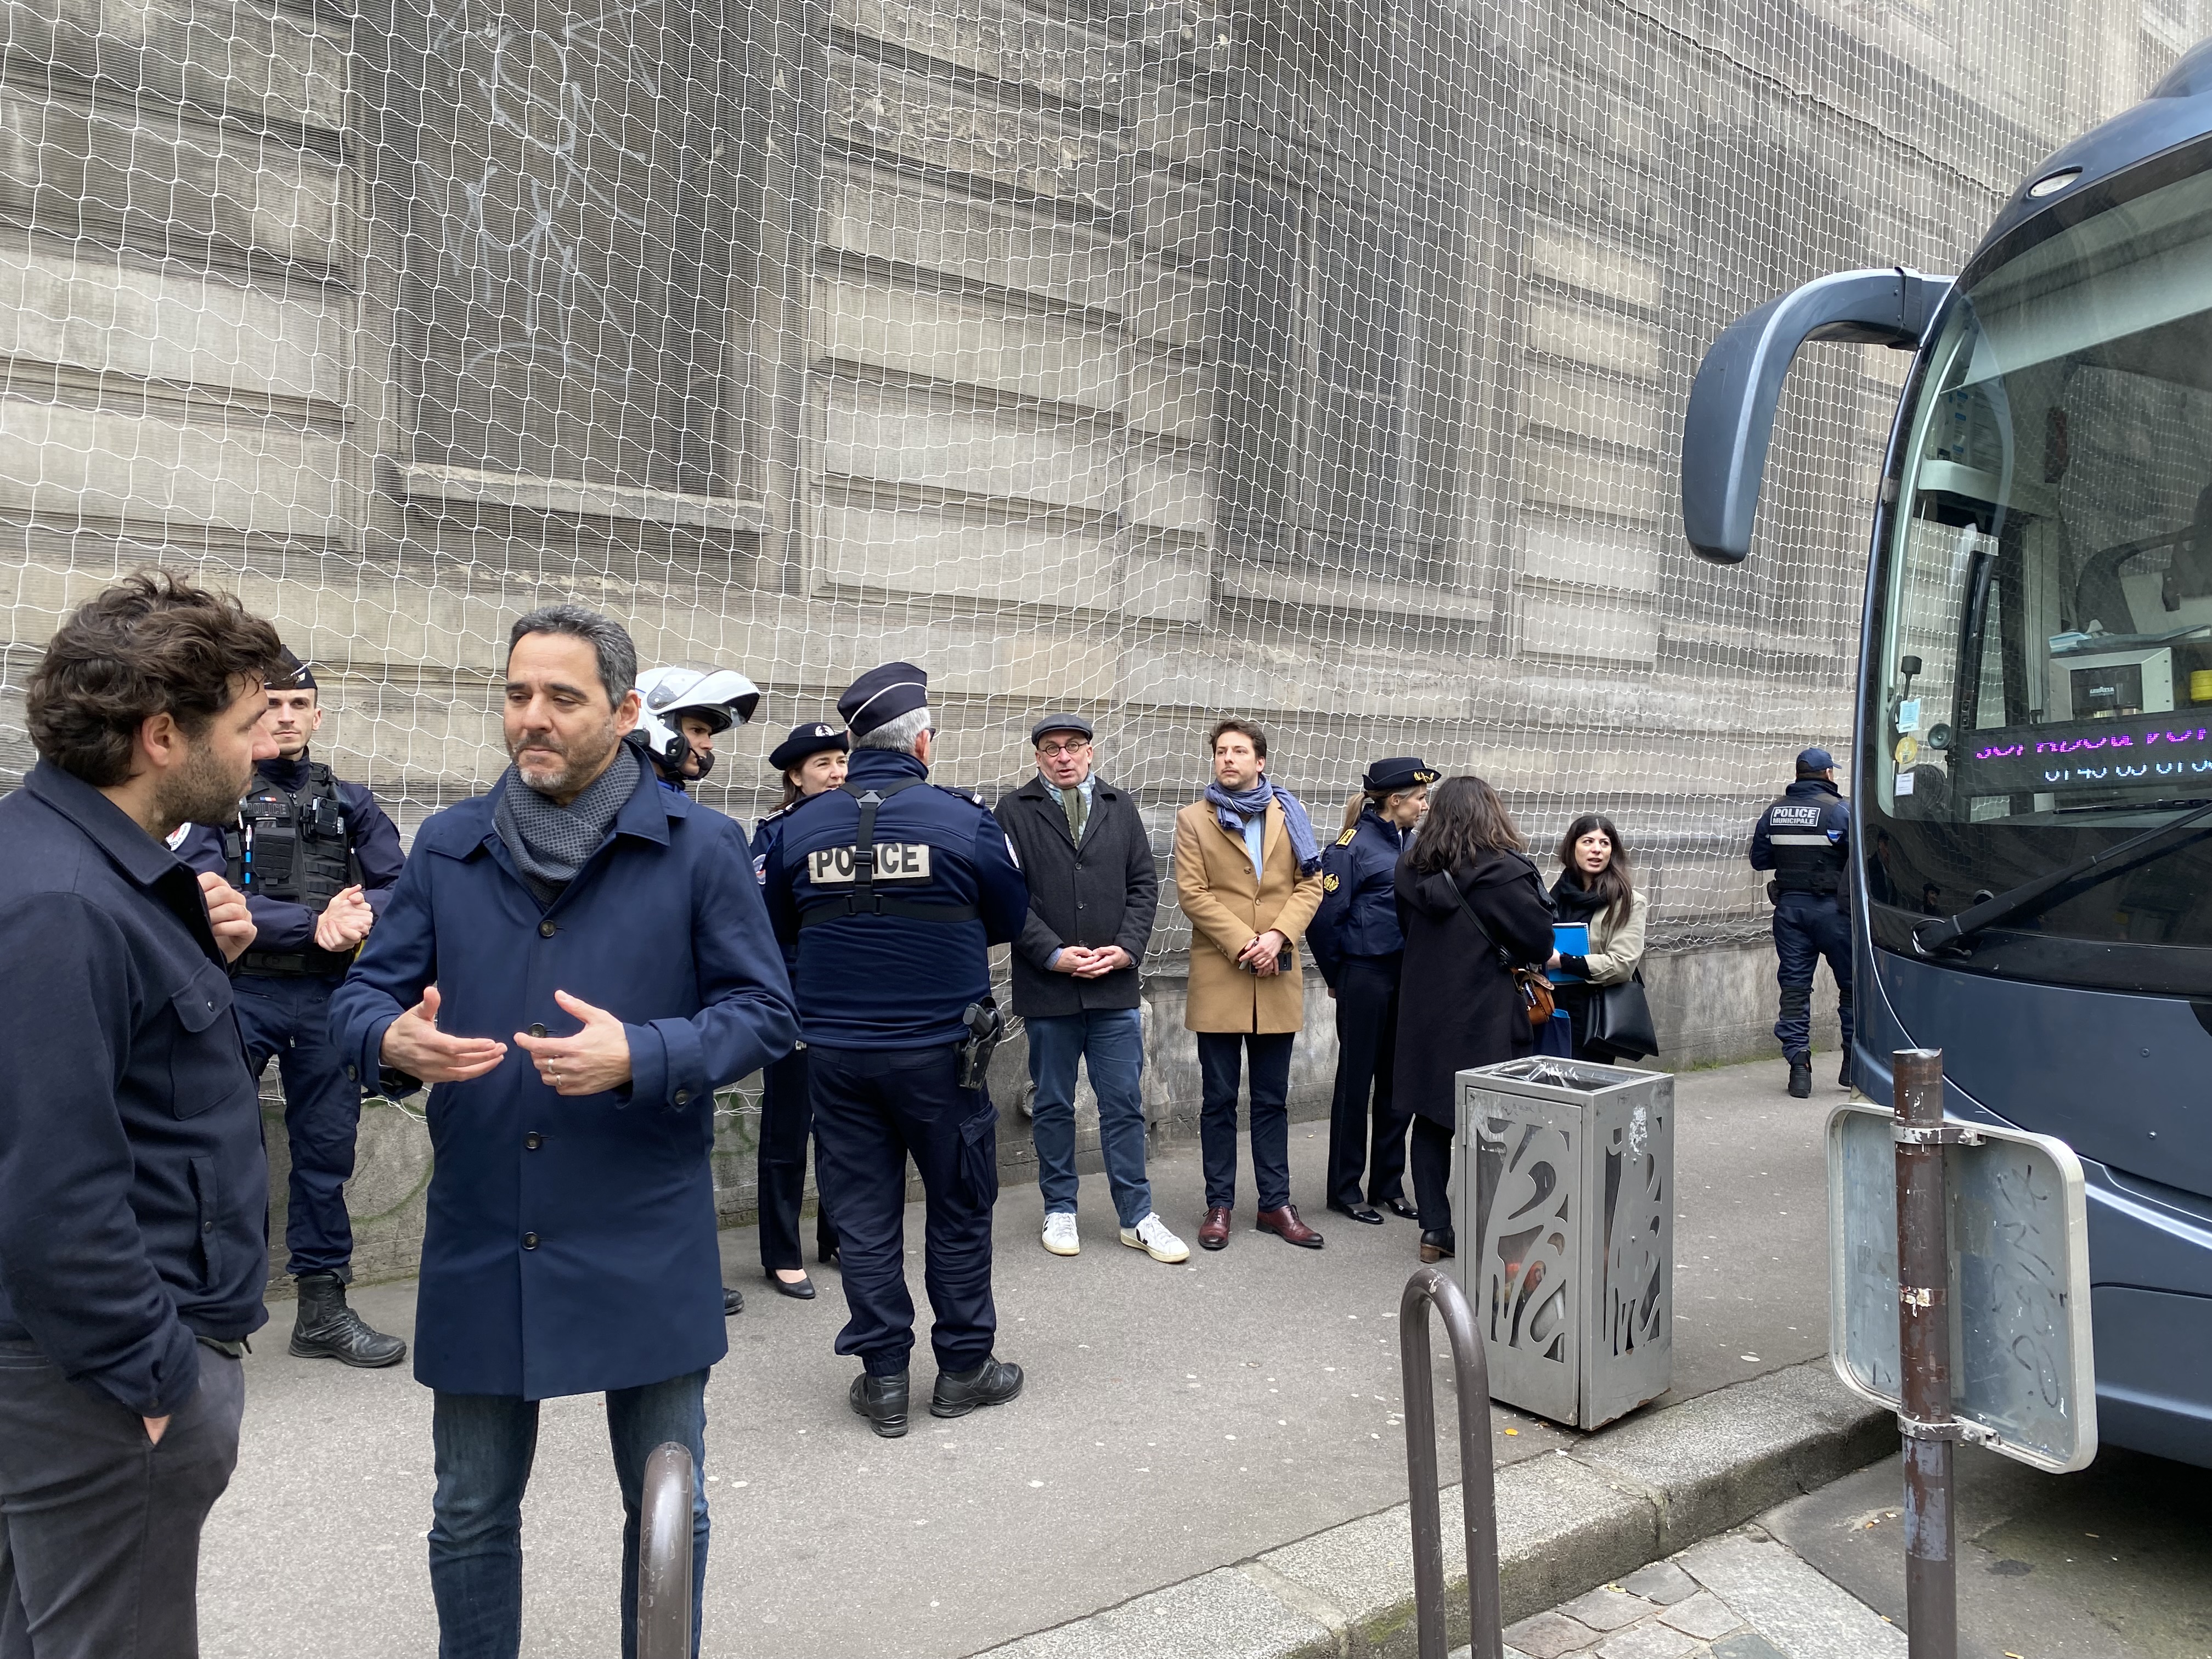 Stationnement sauvage des autocars : opération dissuasion à Paris